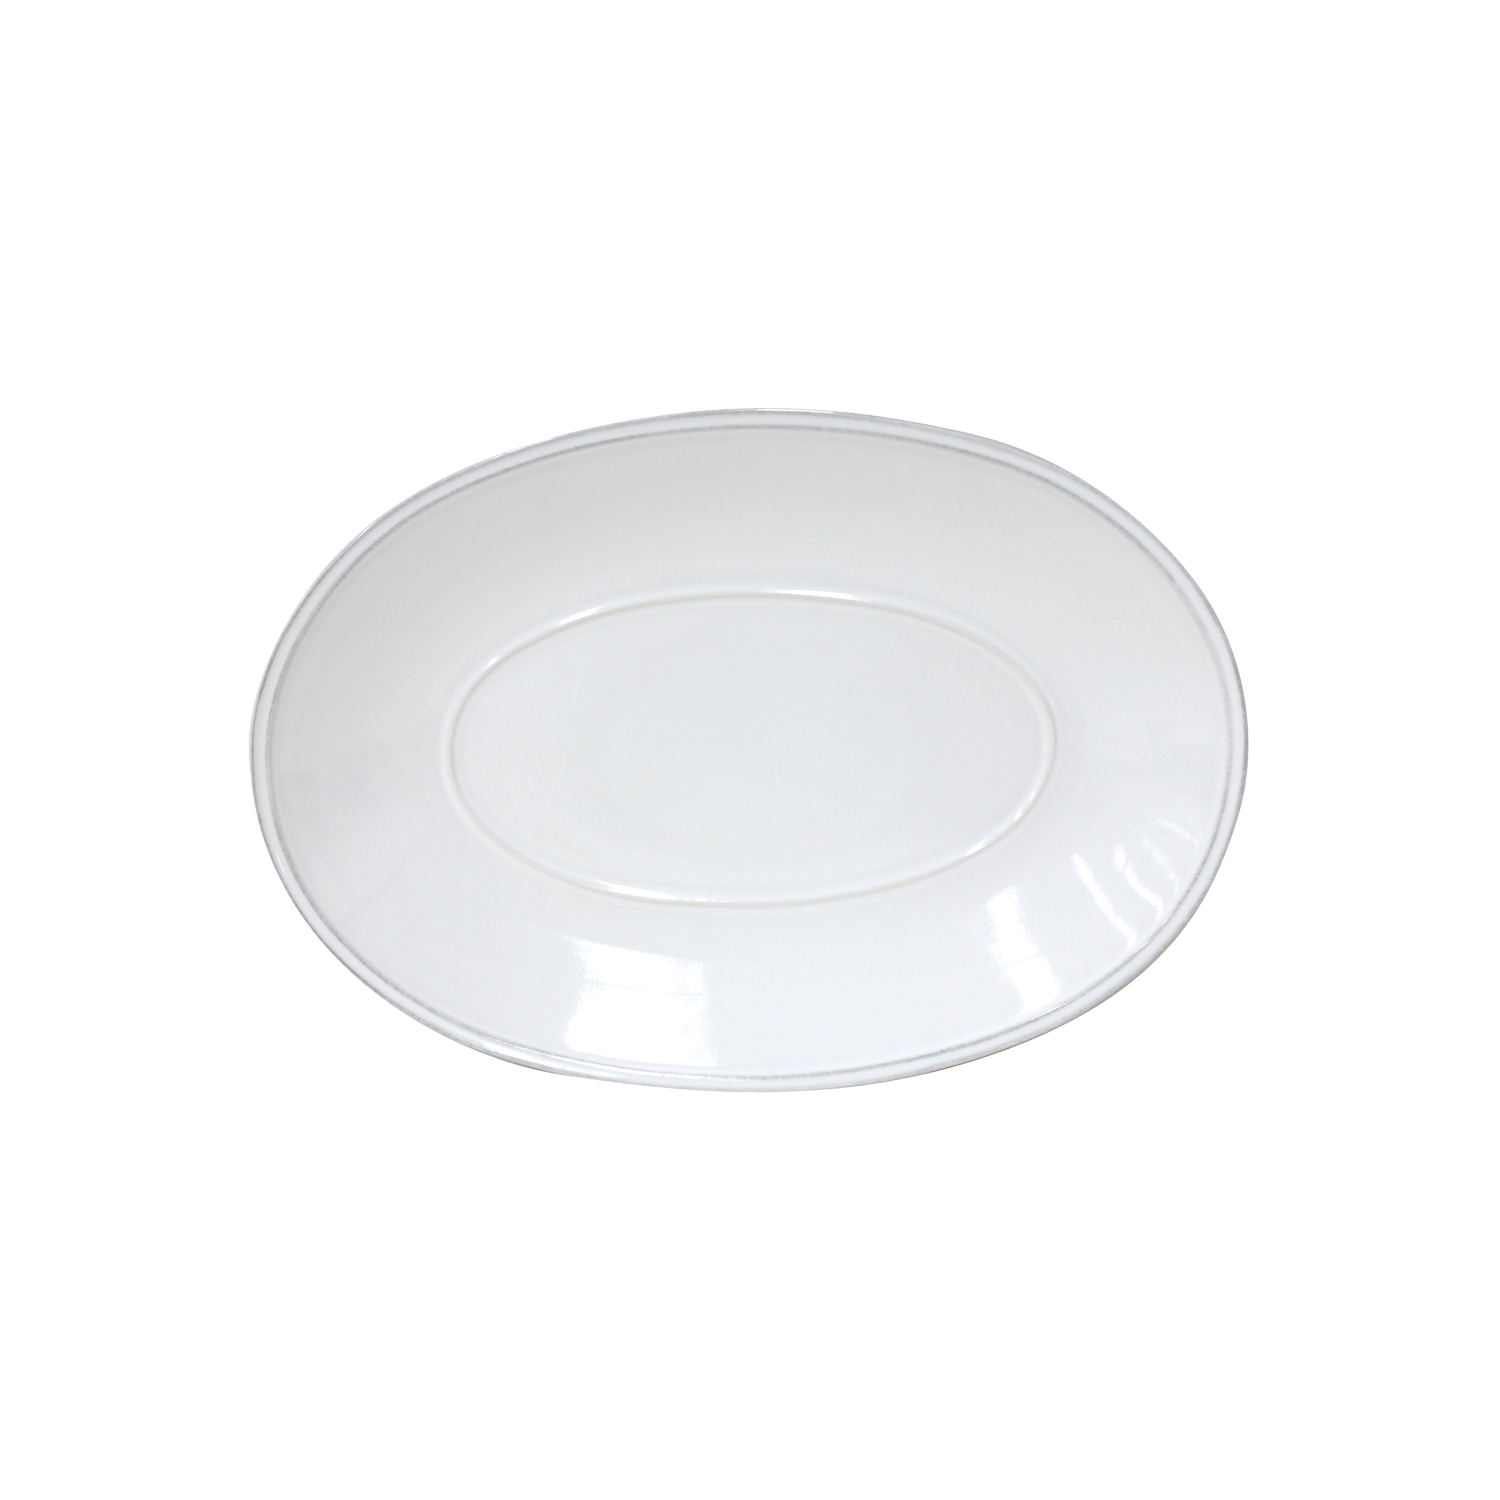 Friso White Oval Platter 30cm Gift